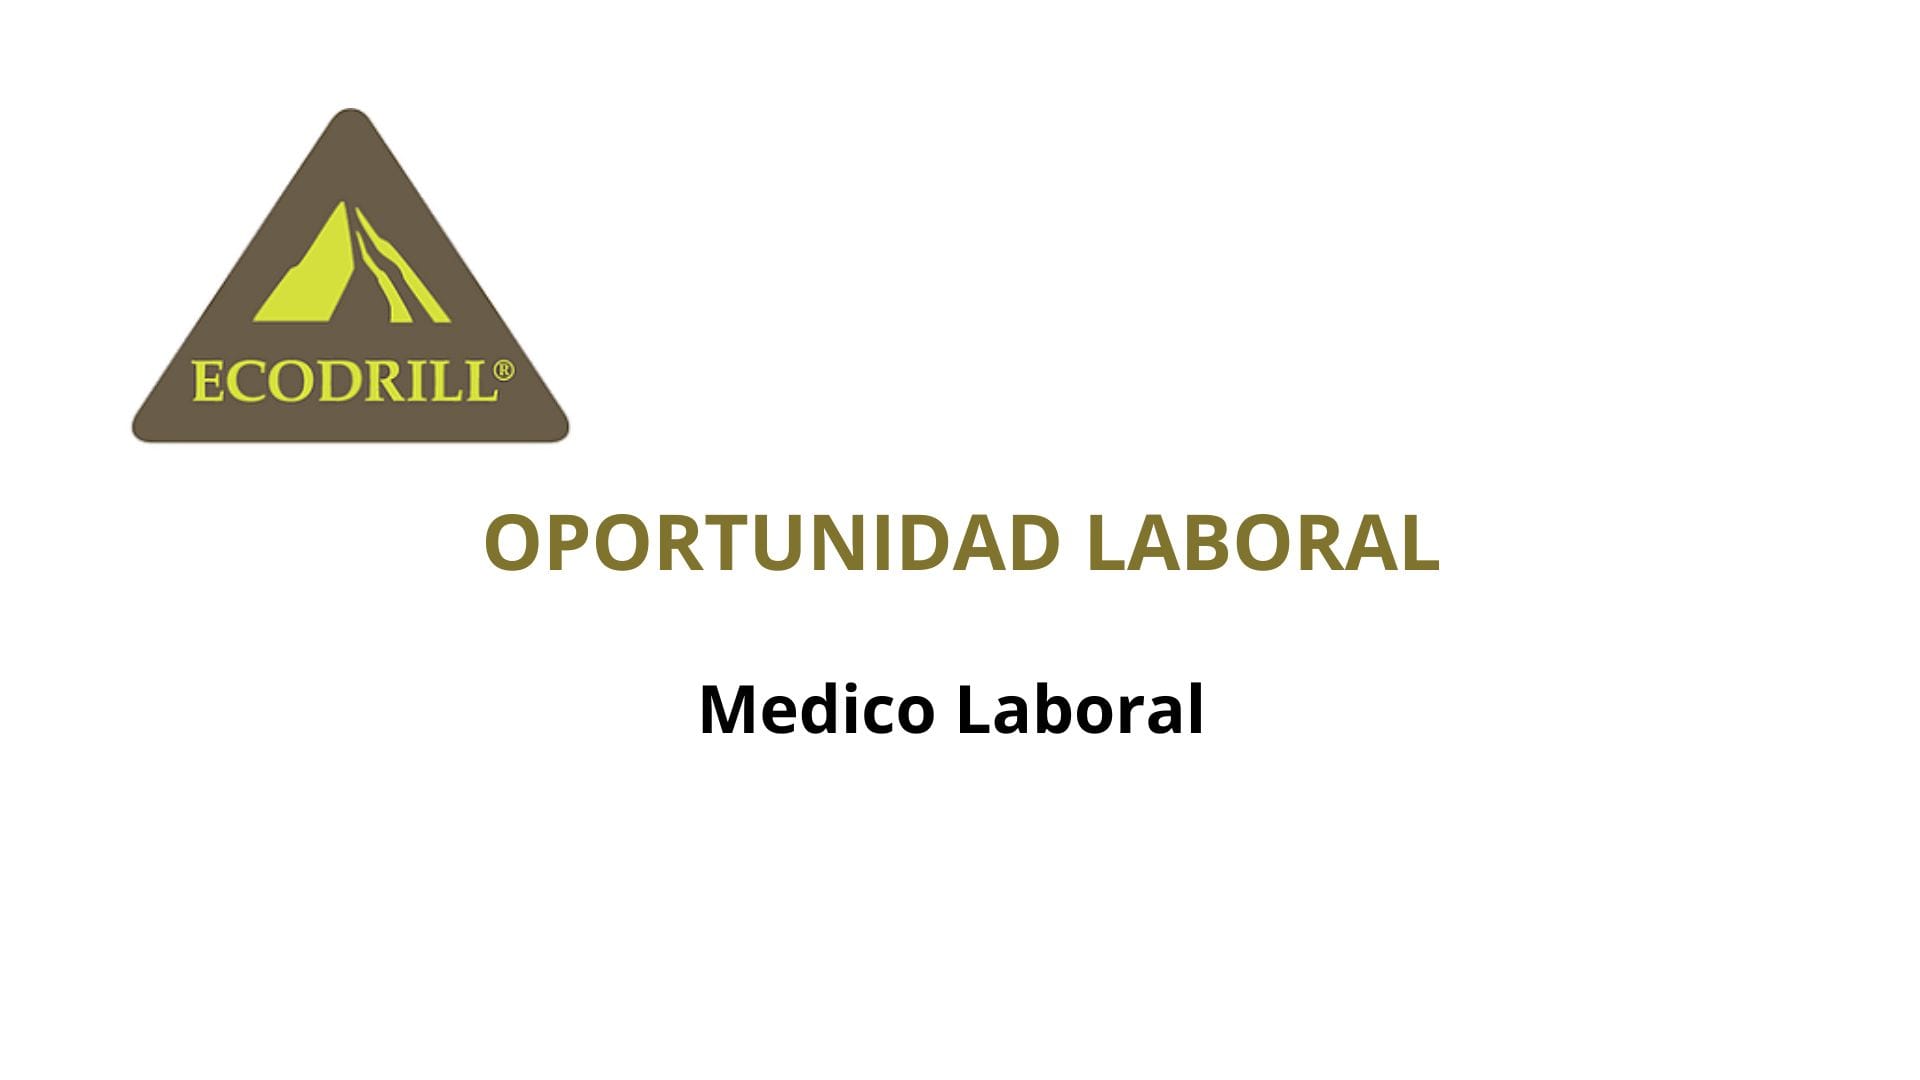 Oportunidad Laboral Ecodrill